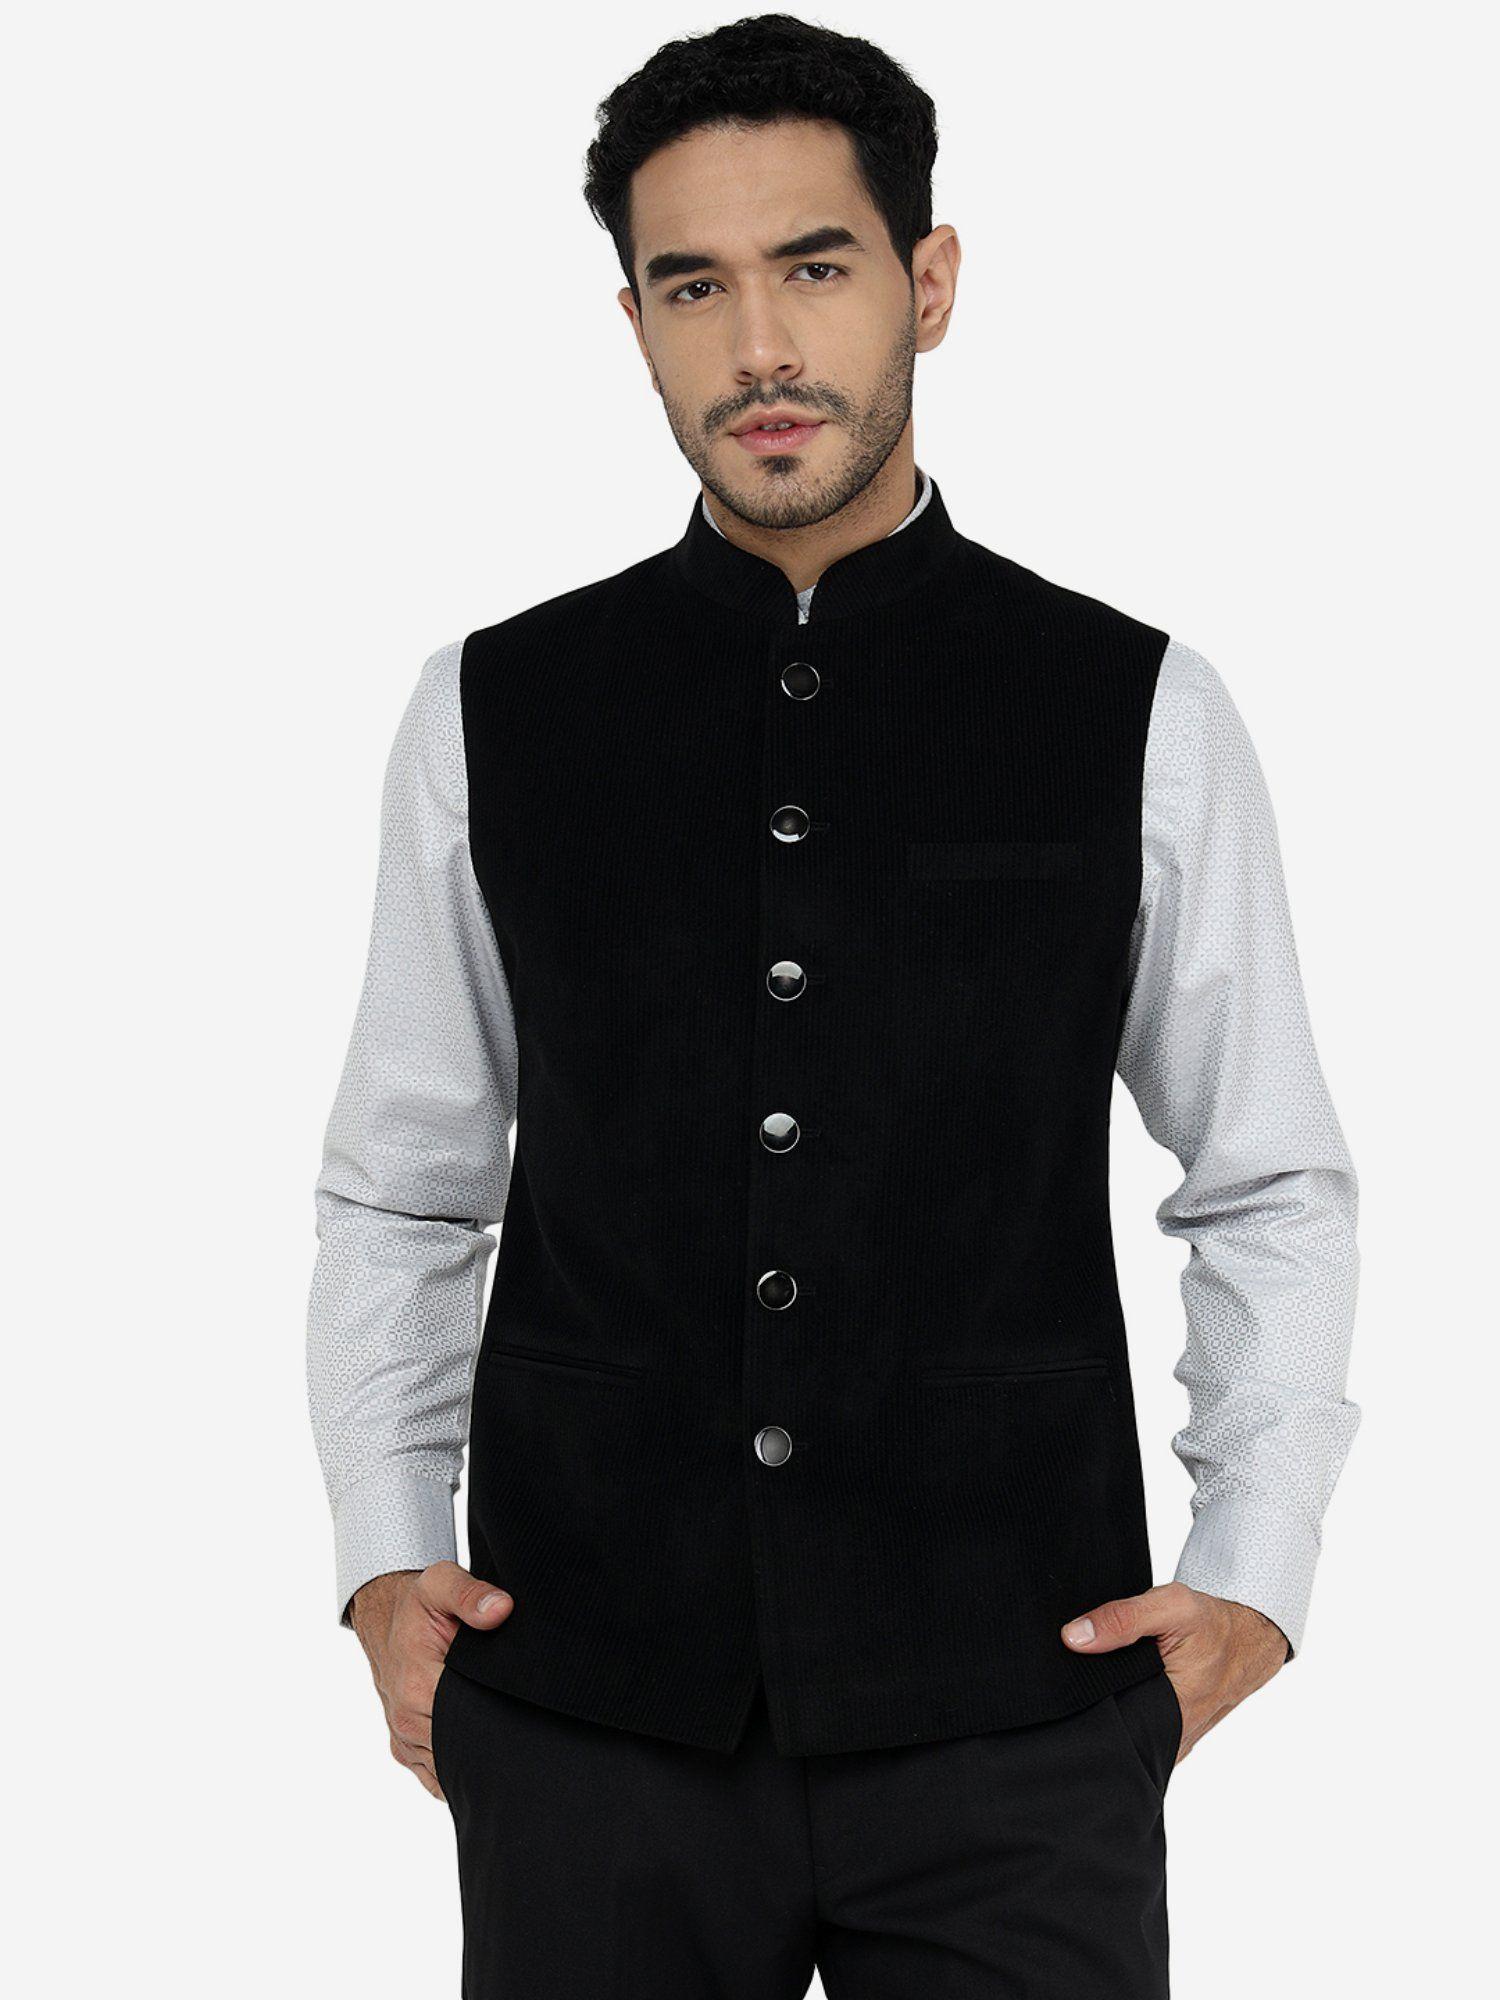 black-bandhgala-wool-jacket